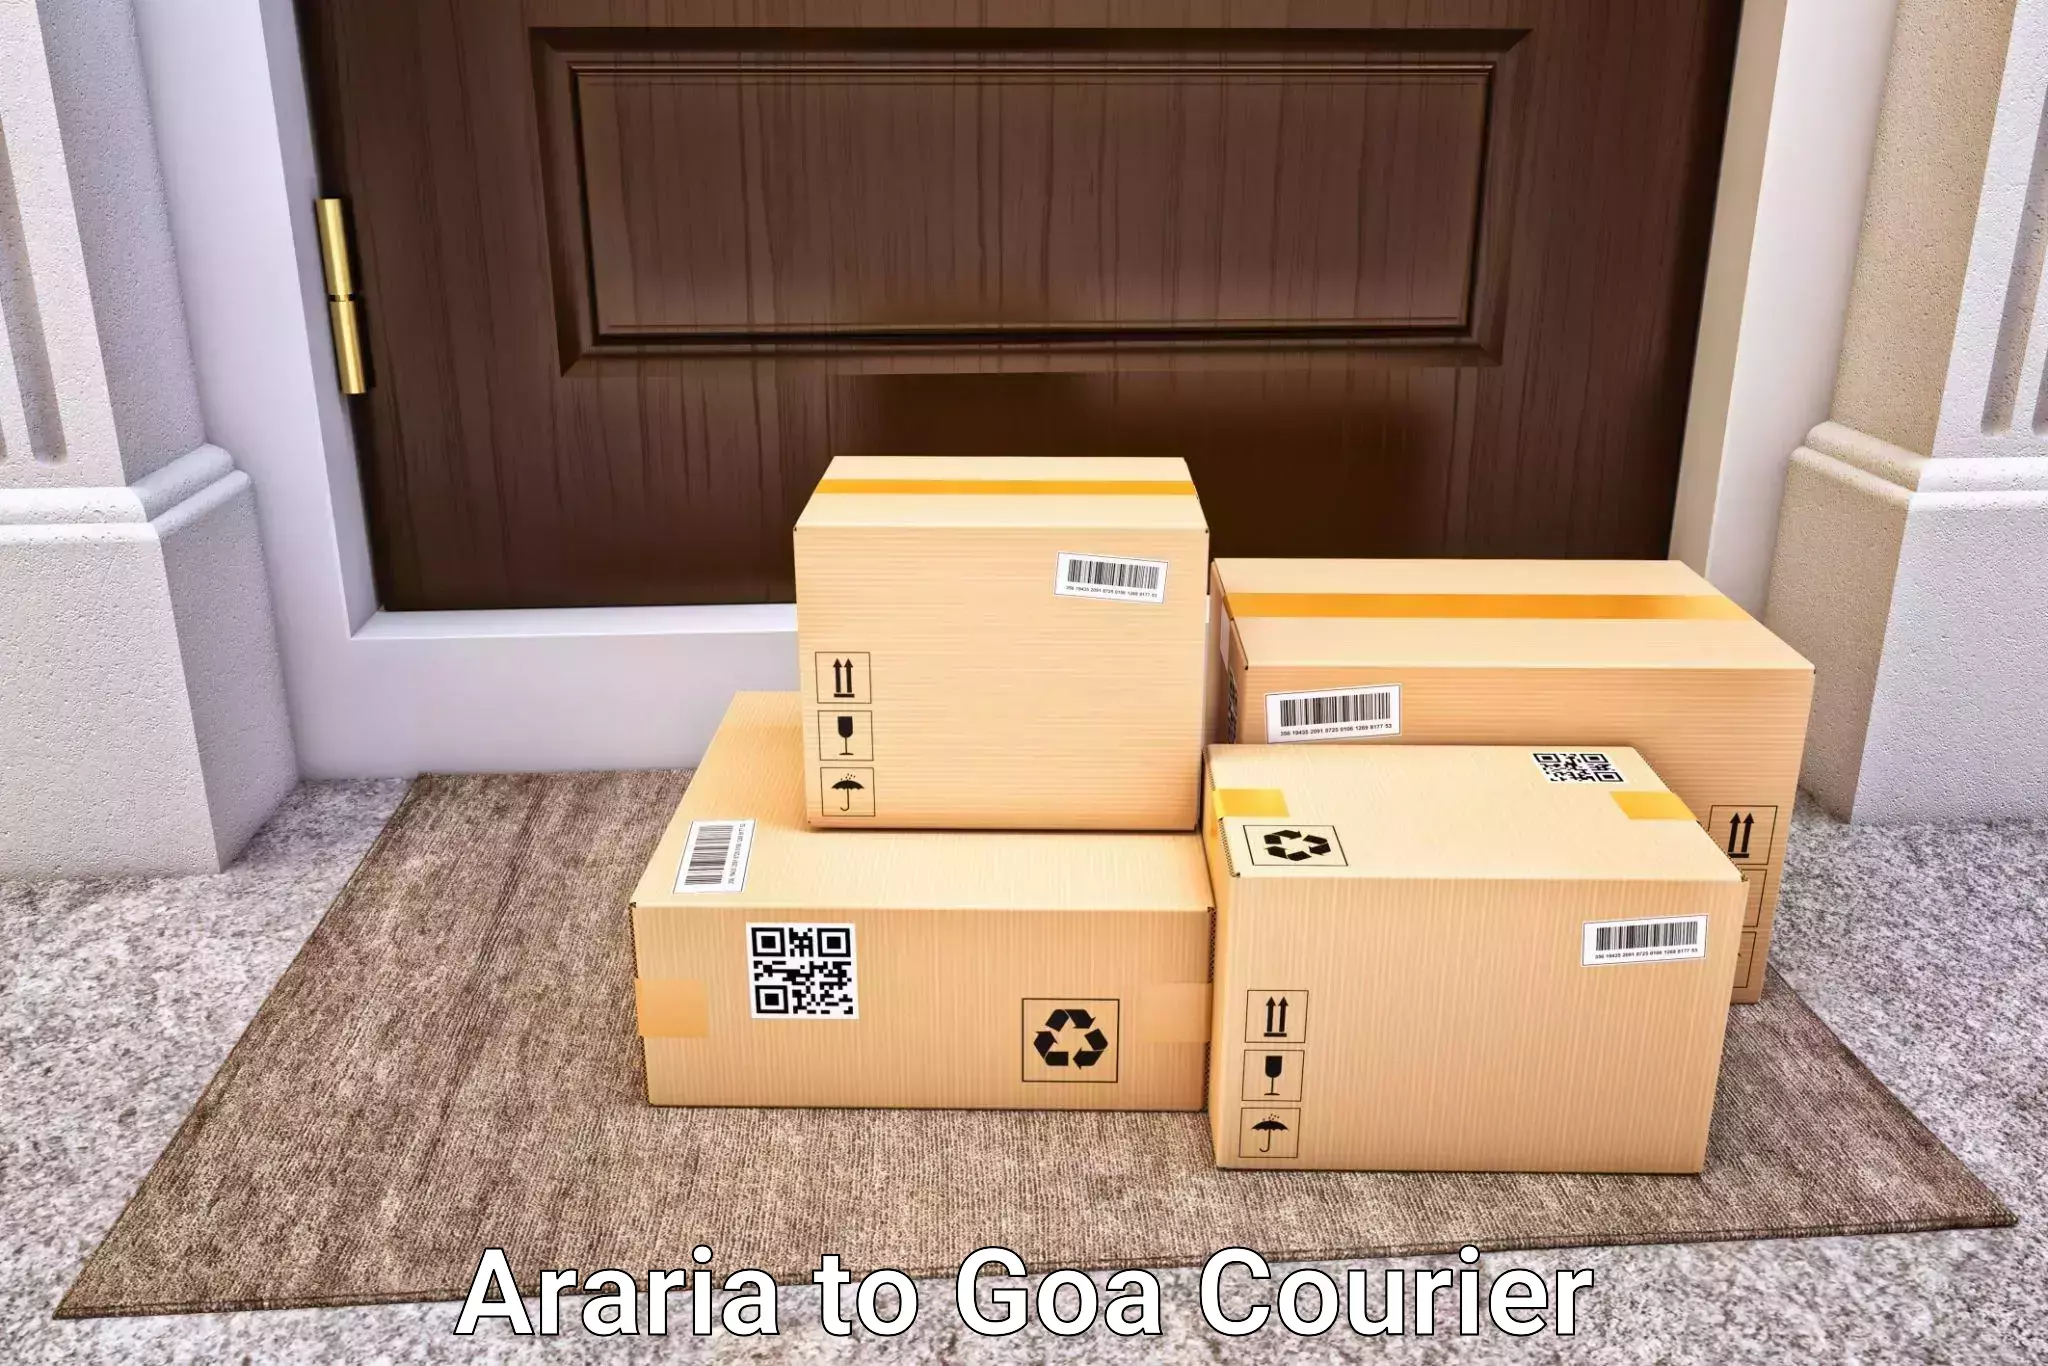 Luggage delivery estimate Araria to Bicholim